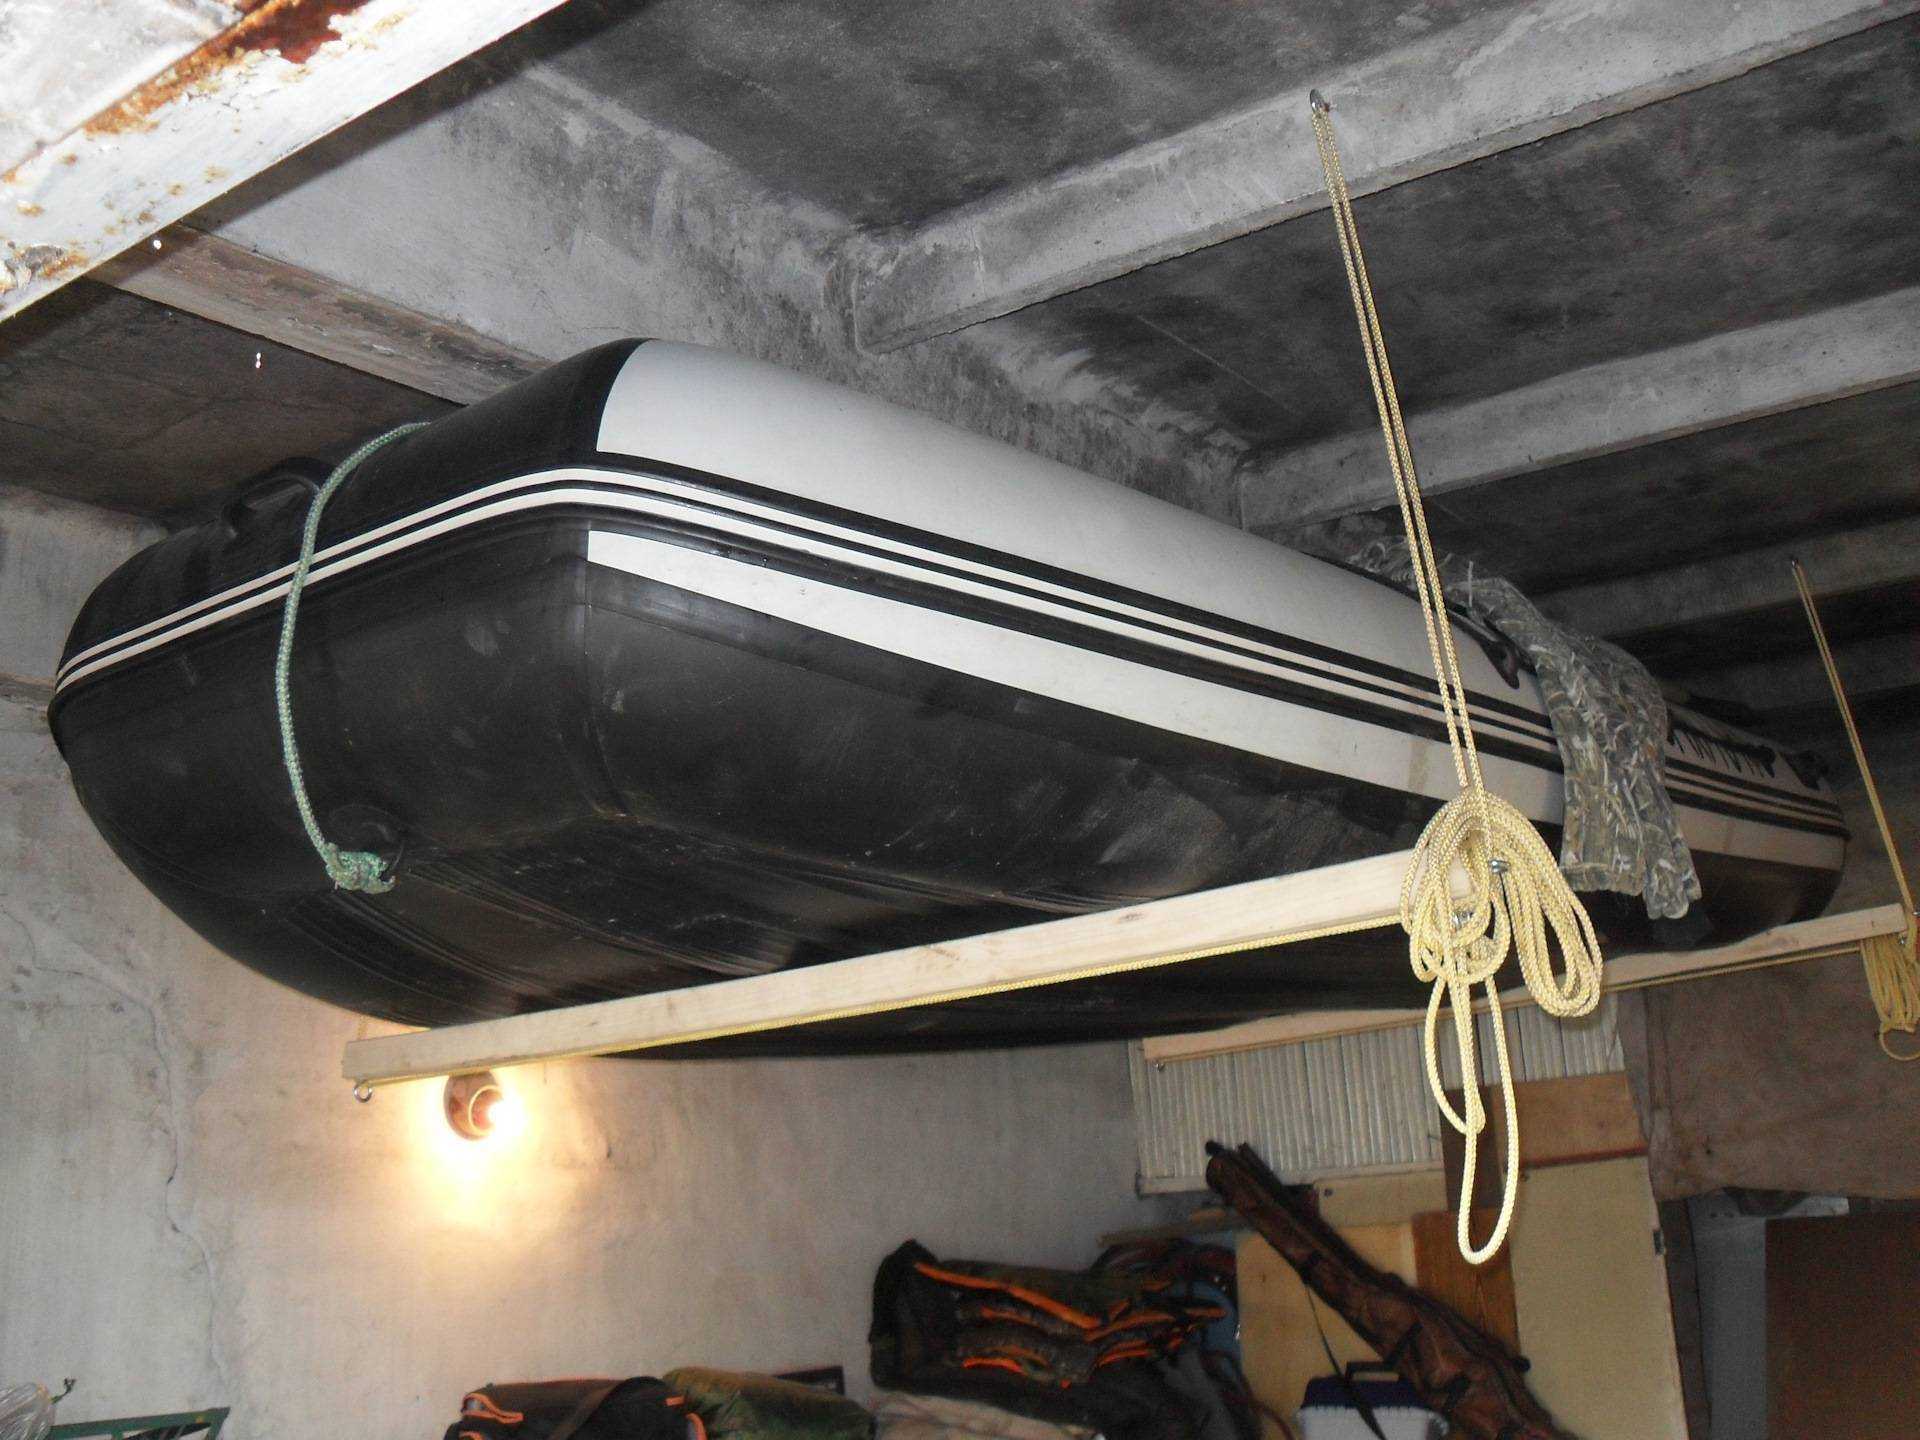 Идеальное место для хранения лодки пвх в гараже под потолком: как подвесить? куда спрятать мотор и прицеп на зиму?